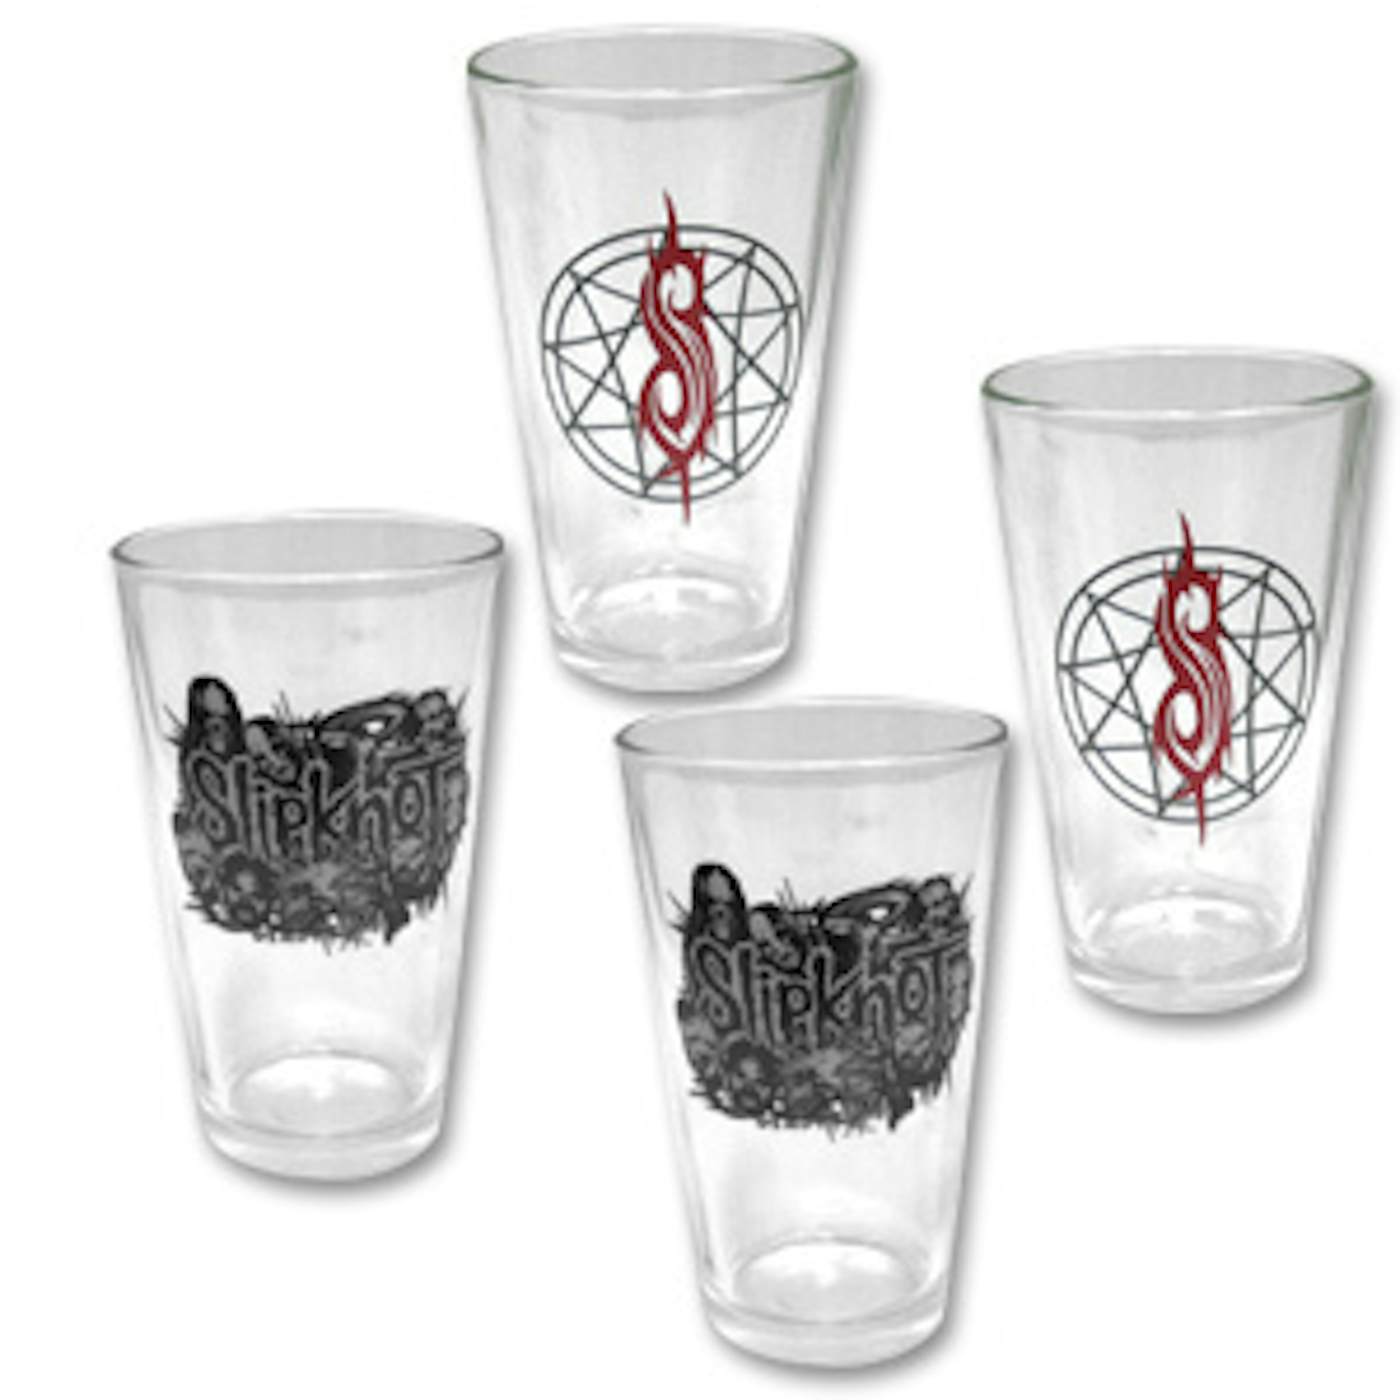 Slipknot 4-Pack Pint Glasses